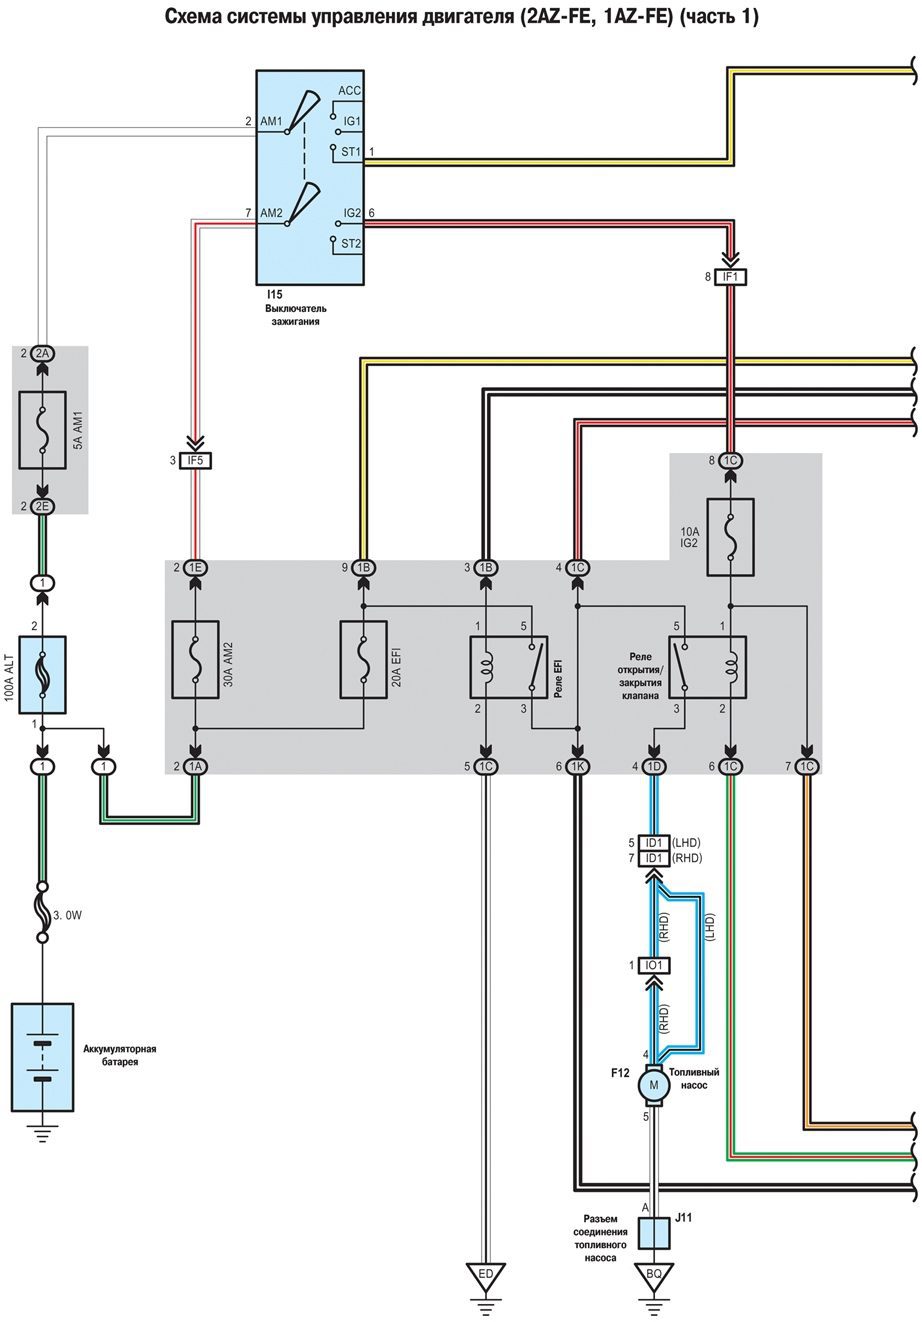 Схема системы управления двигателя (2AZ-FE, 1AZ-FE ) - часть 1